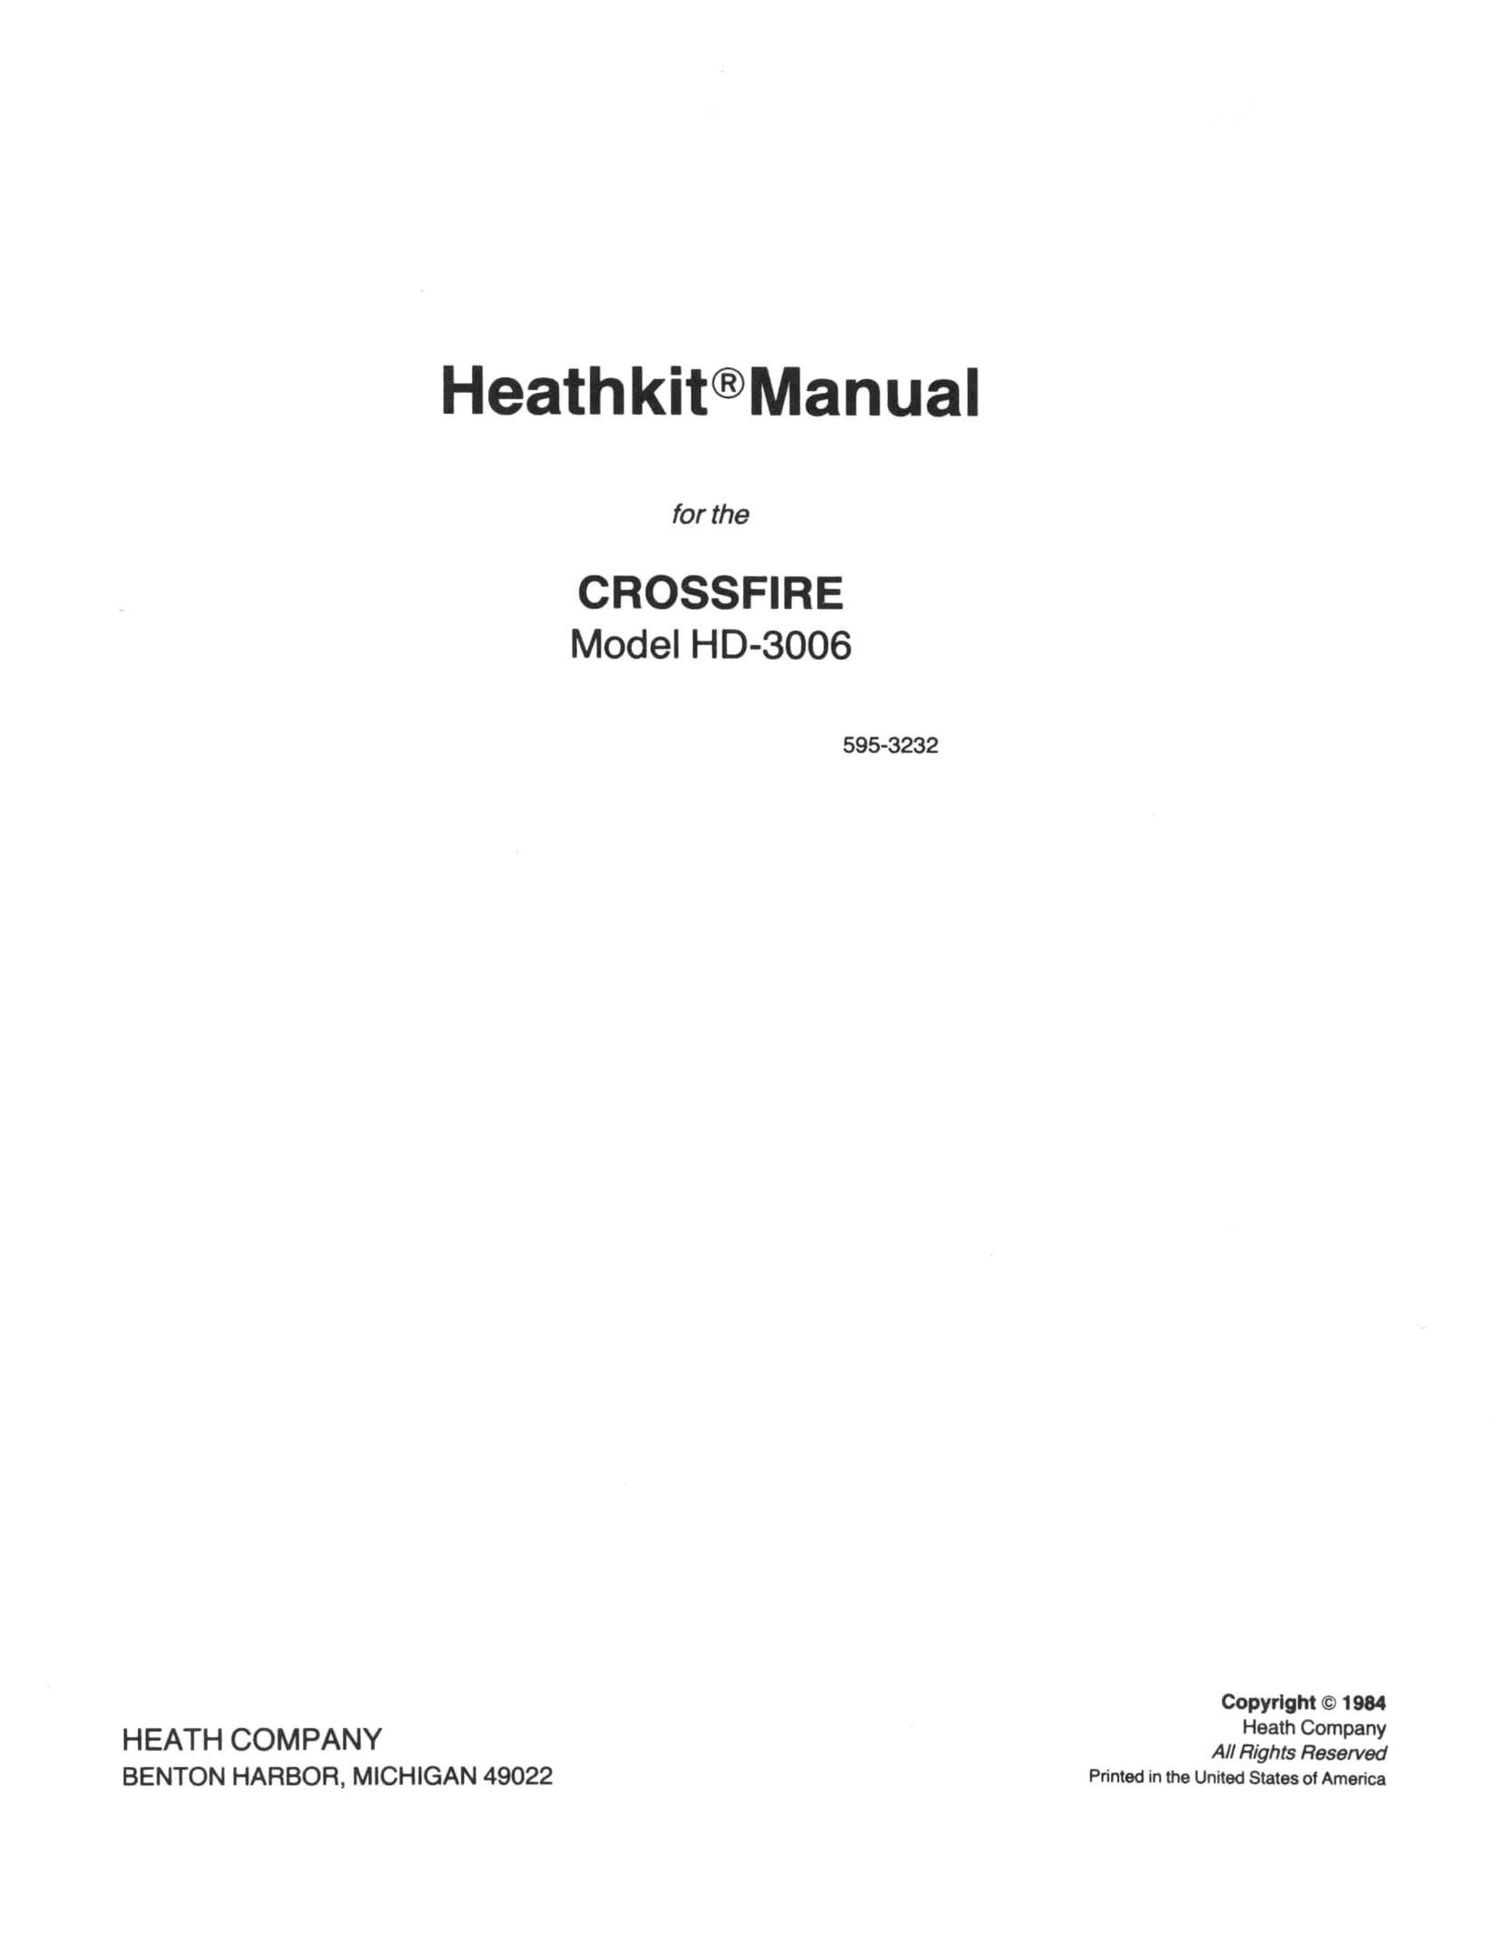 Heathkit HD 3006 Manual